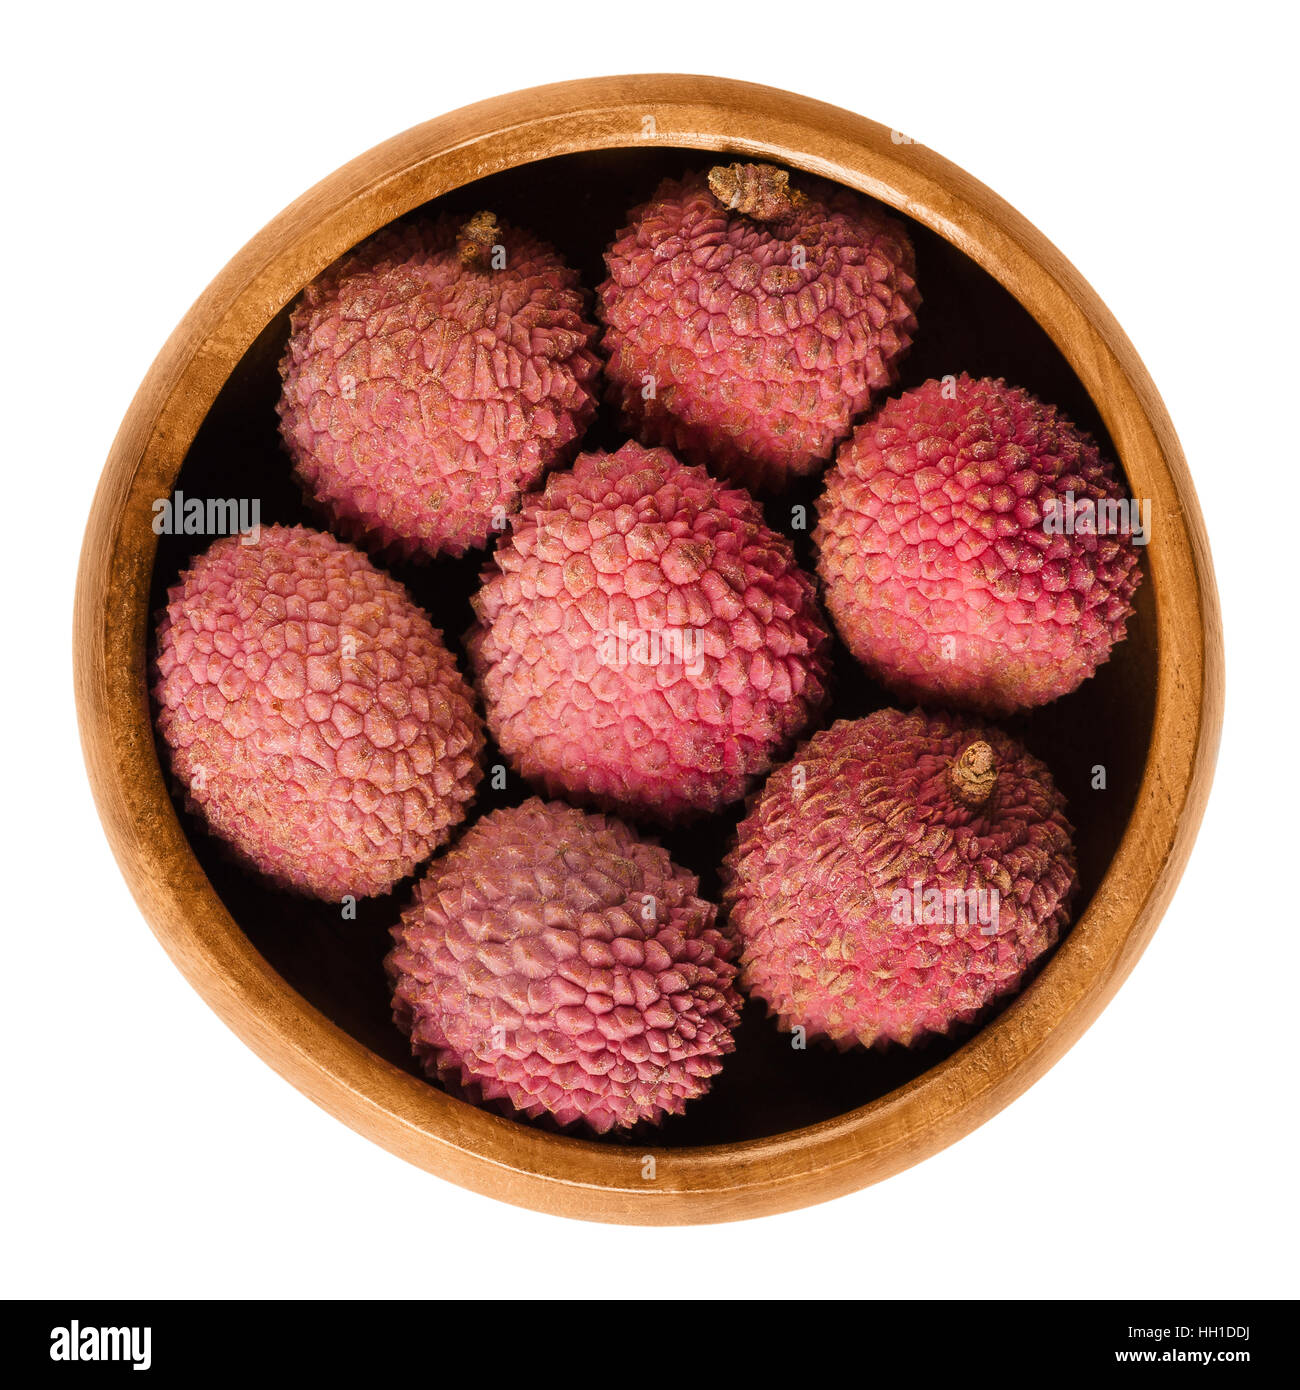 Il Lychee o litchi frutti nella ciotola di legno. Con la buccia rosso maturo Litchi chinensis, chiamato anche liechee, liche, lizhi o li zhi. Foto Stock